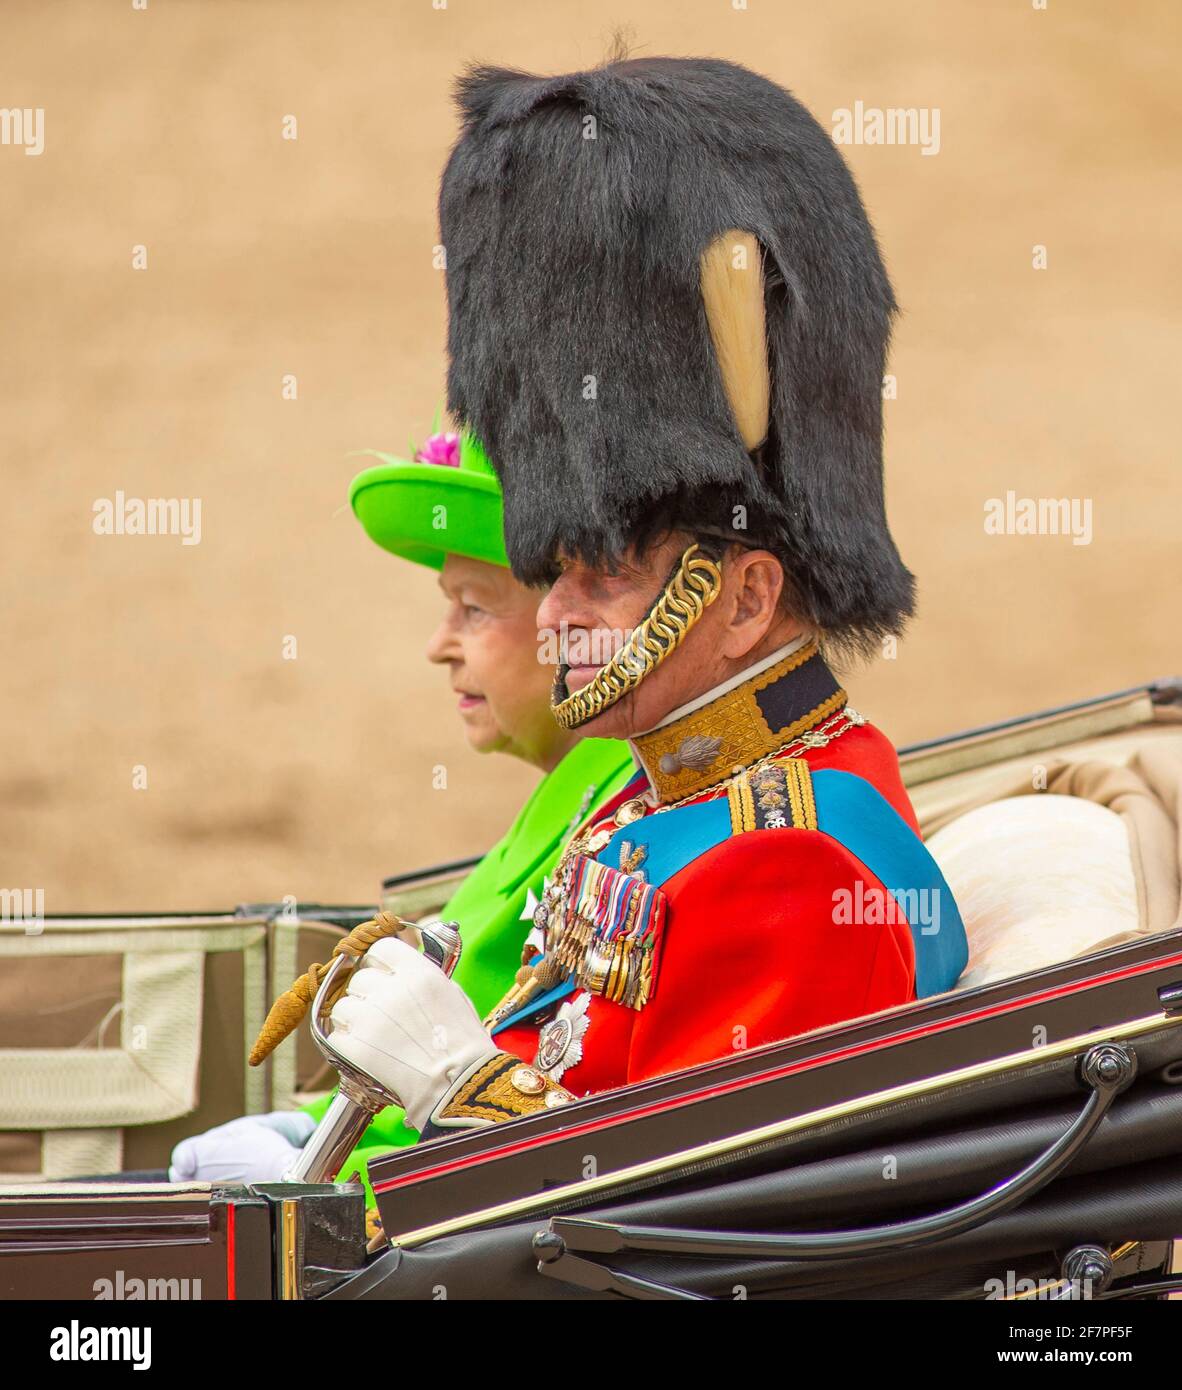 FOTO DEL ARCHIVO: S.A.R. el Príncipe Felipe, el Duque de Edimburgo, asiste a la ceremonia de Trooping the Color el 11 de junio de 2016 en Horse Guards Parade, acompañando a la Reina Isabel II El Duque de Edimburgo lleva el uniforme del Coronel en Jefe, Guardias de Granadero. Crédito: Malcolm Park/Alamy Live News. Foto de stock